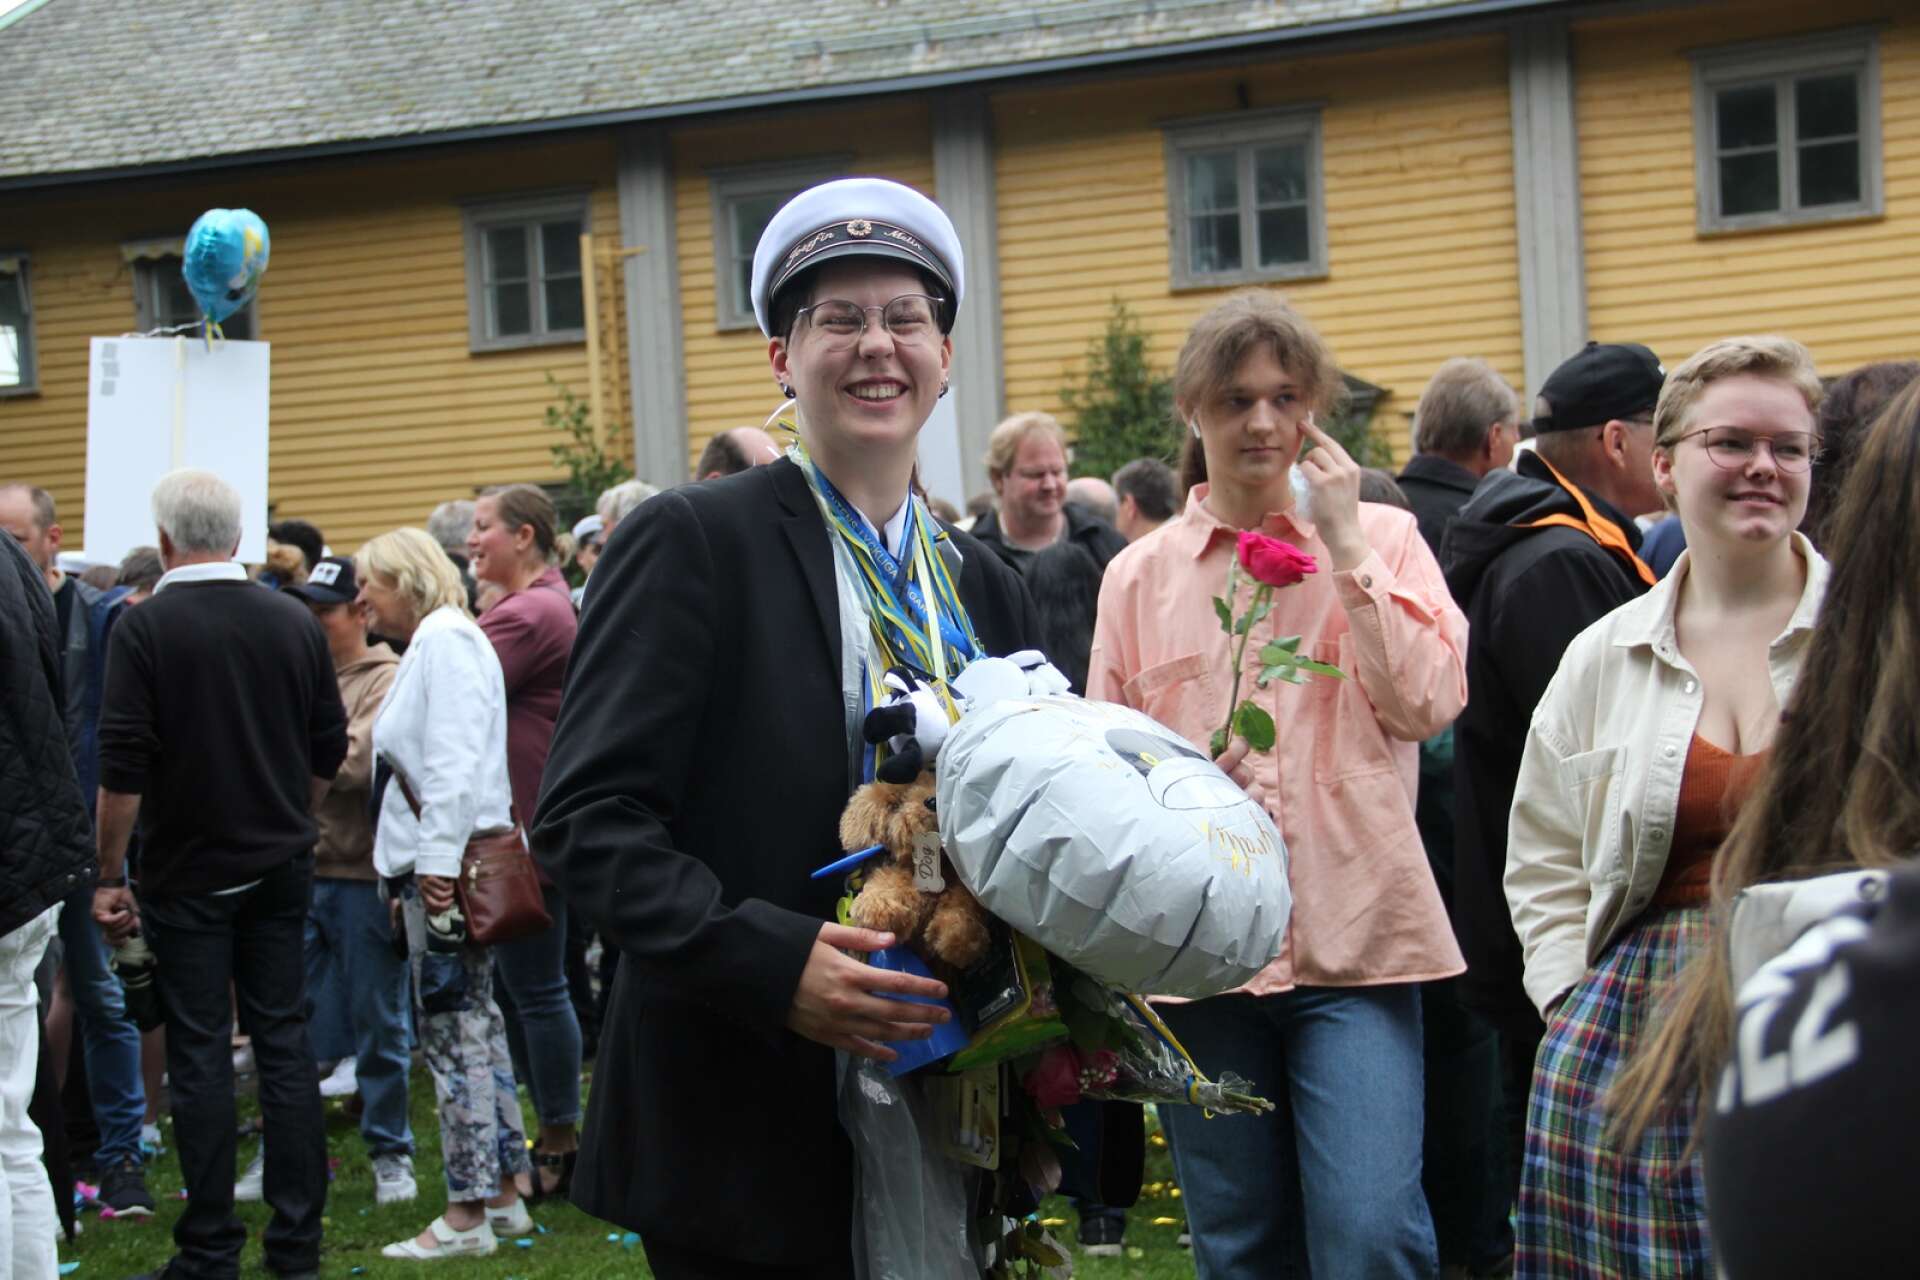 Studenterna på Herrgårdsgymnasiet springer ut och gratuleras av släkt och vänner.